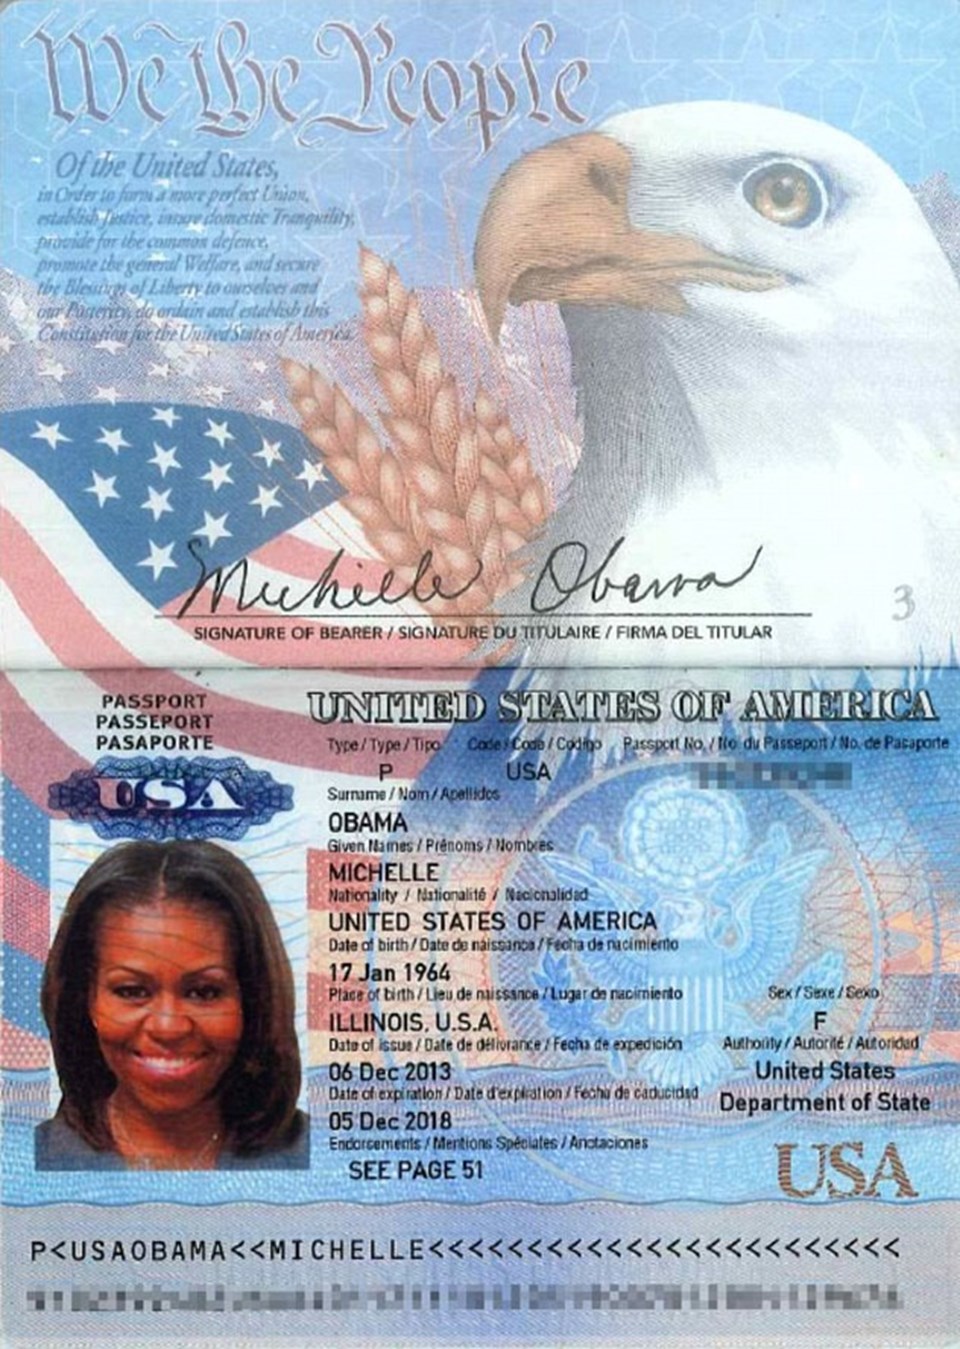 Пример сша. Паспорт гражданина США. Как выглядит американский паспорт гражданина США. Кактвыглядит паспорт США. Гражданка США паспорт.